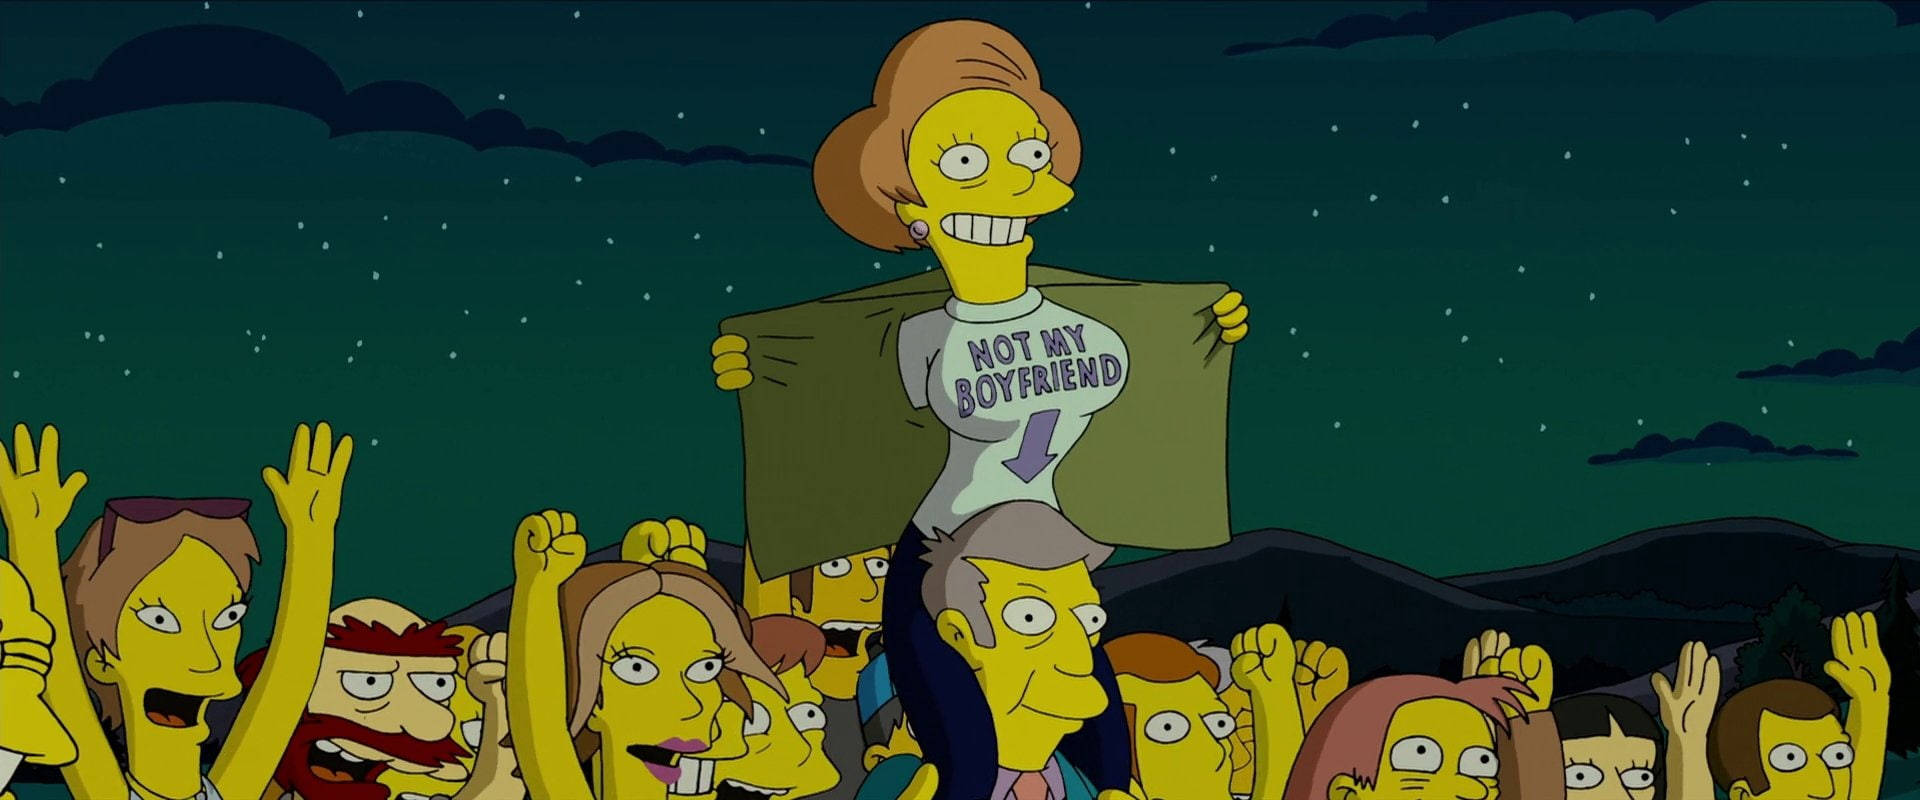 Edna Krabappel From The Simpsons Movie Wallpaper